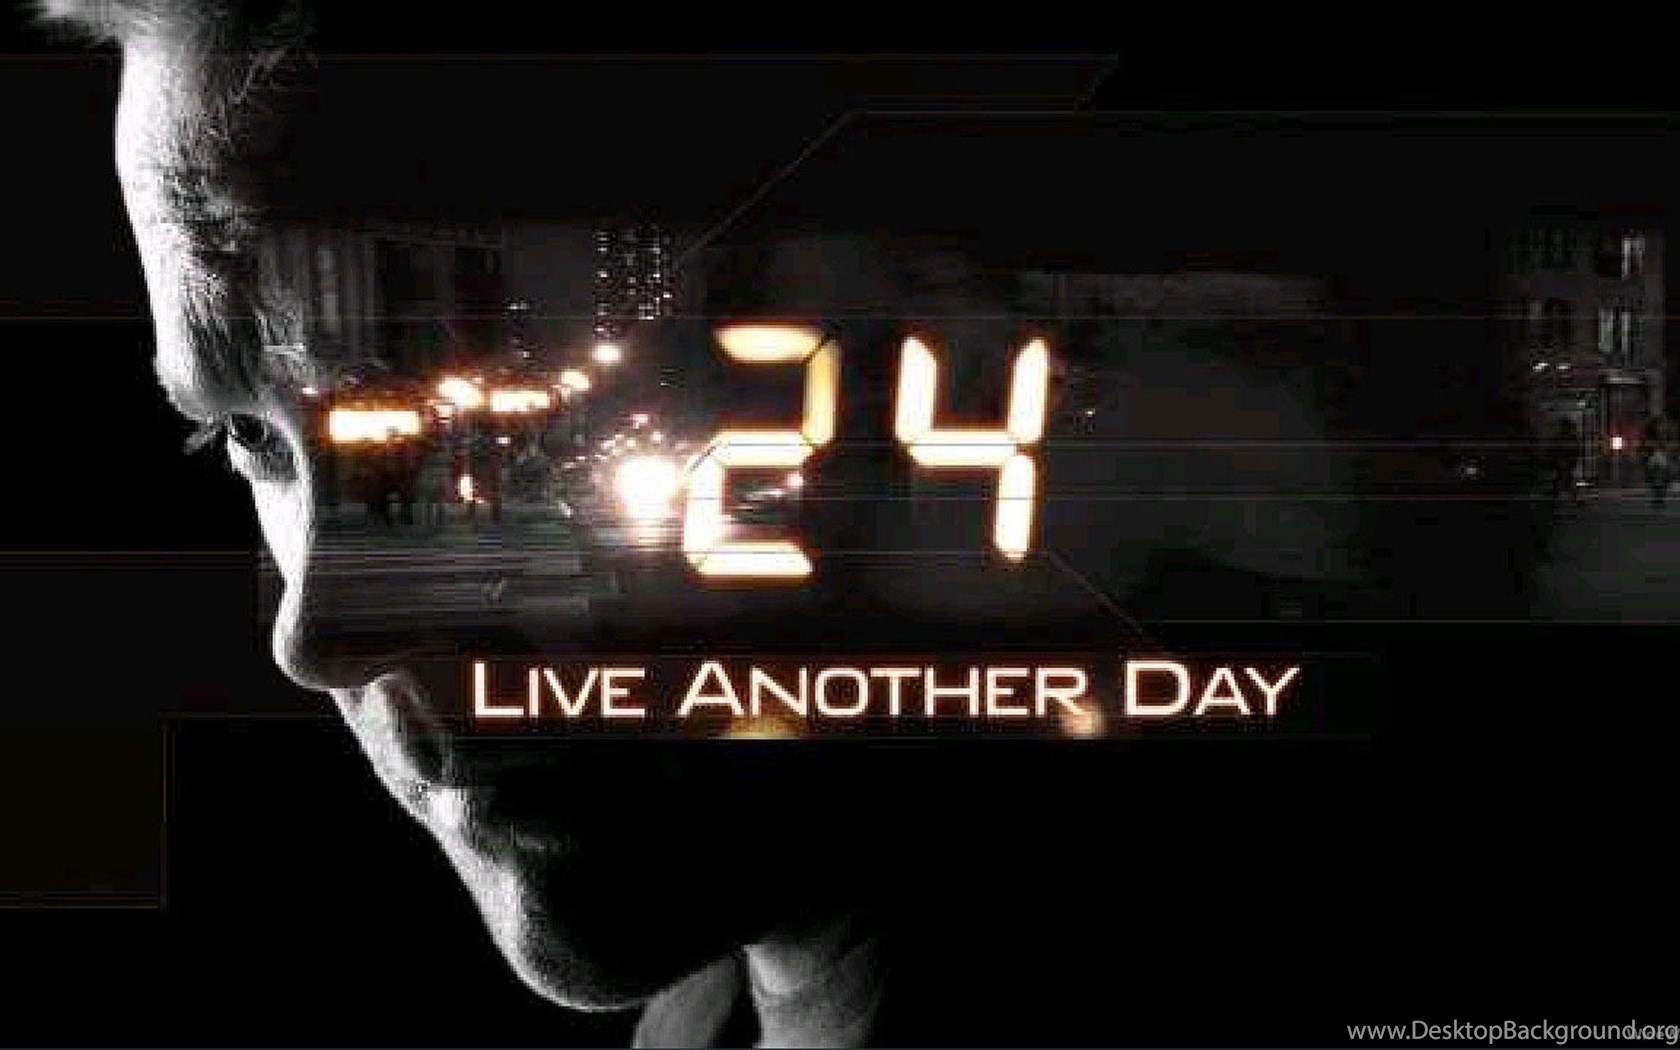 Another day slow. Live another Day. Live another Day 1 час. Live another Day обложка. Another Day игра.